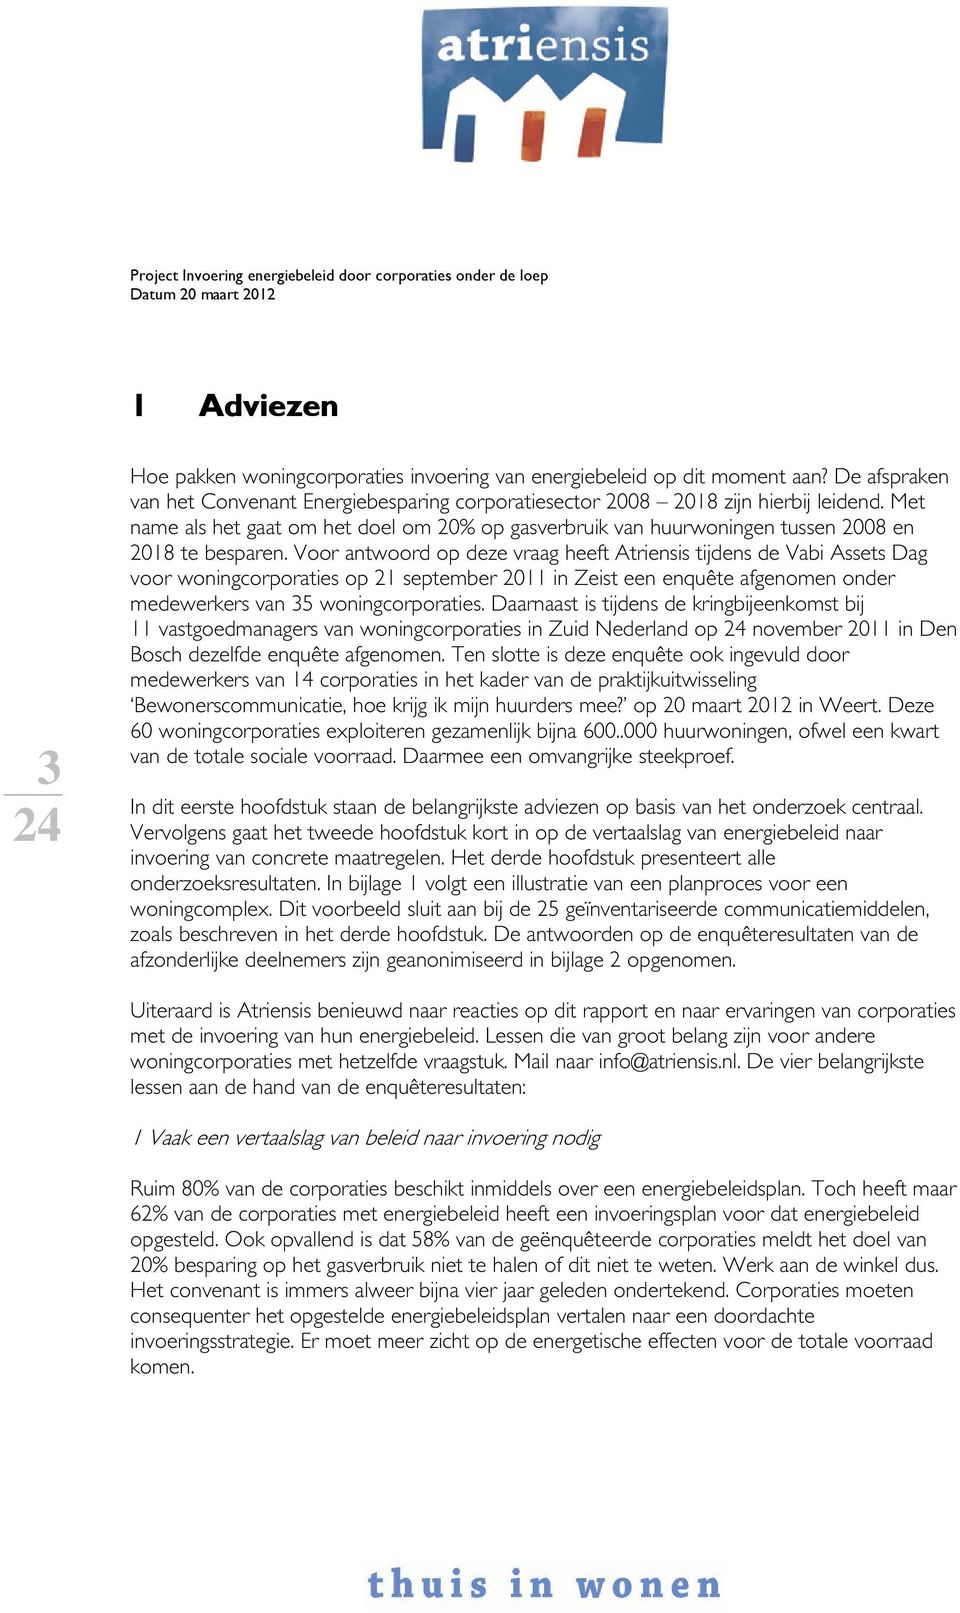 Voor antwoord op deze vraag heeft Atriensis tijdens de Vabi Assets Dag voor woningcorporaties op 21 september 2011 in Zeist een enquête afgenomen onder medewerkers van 35 woningcorporaties.